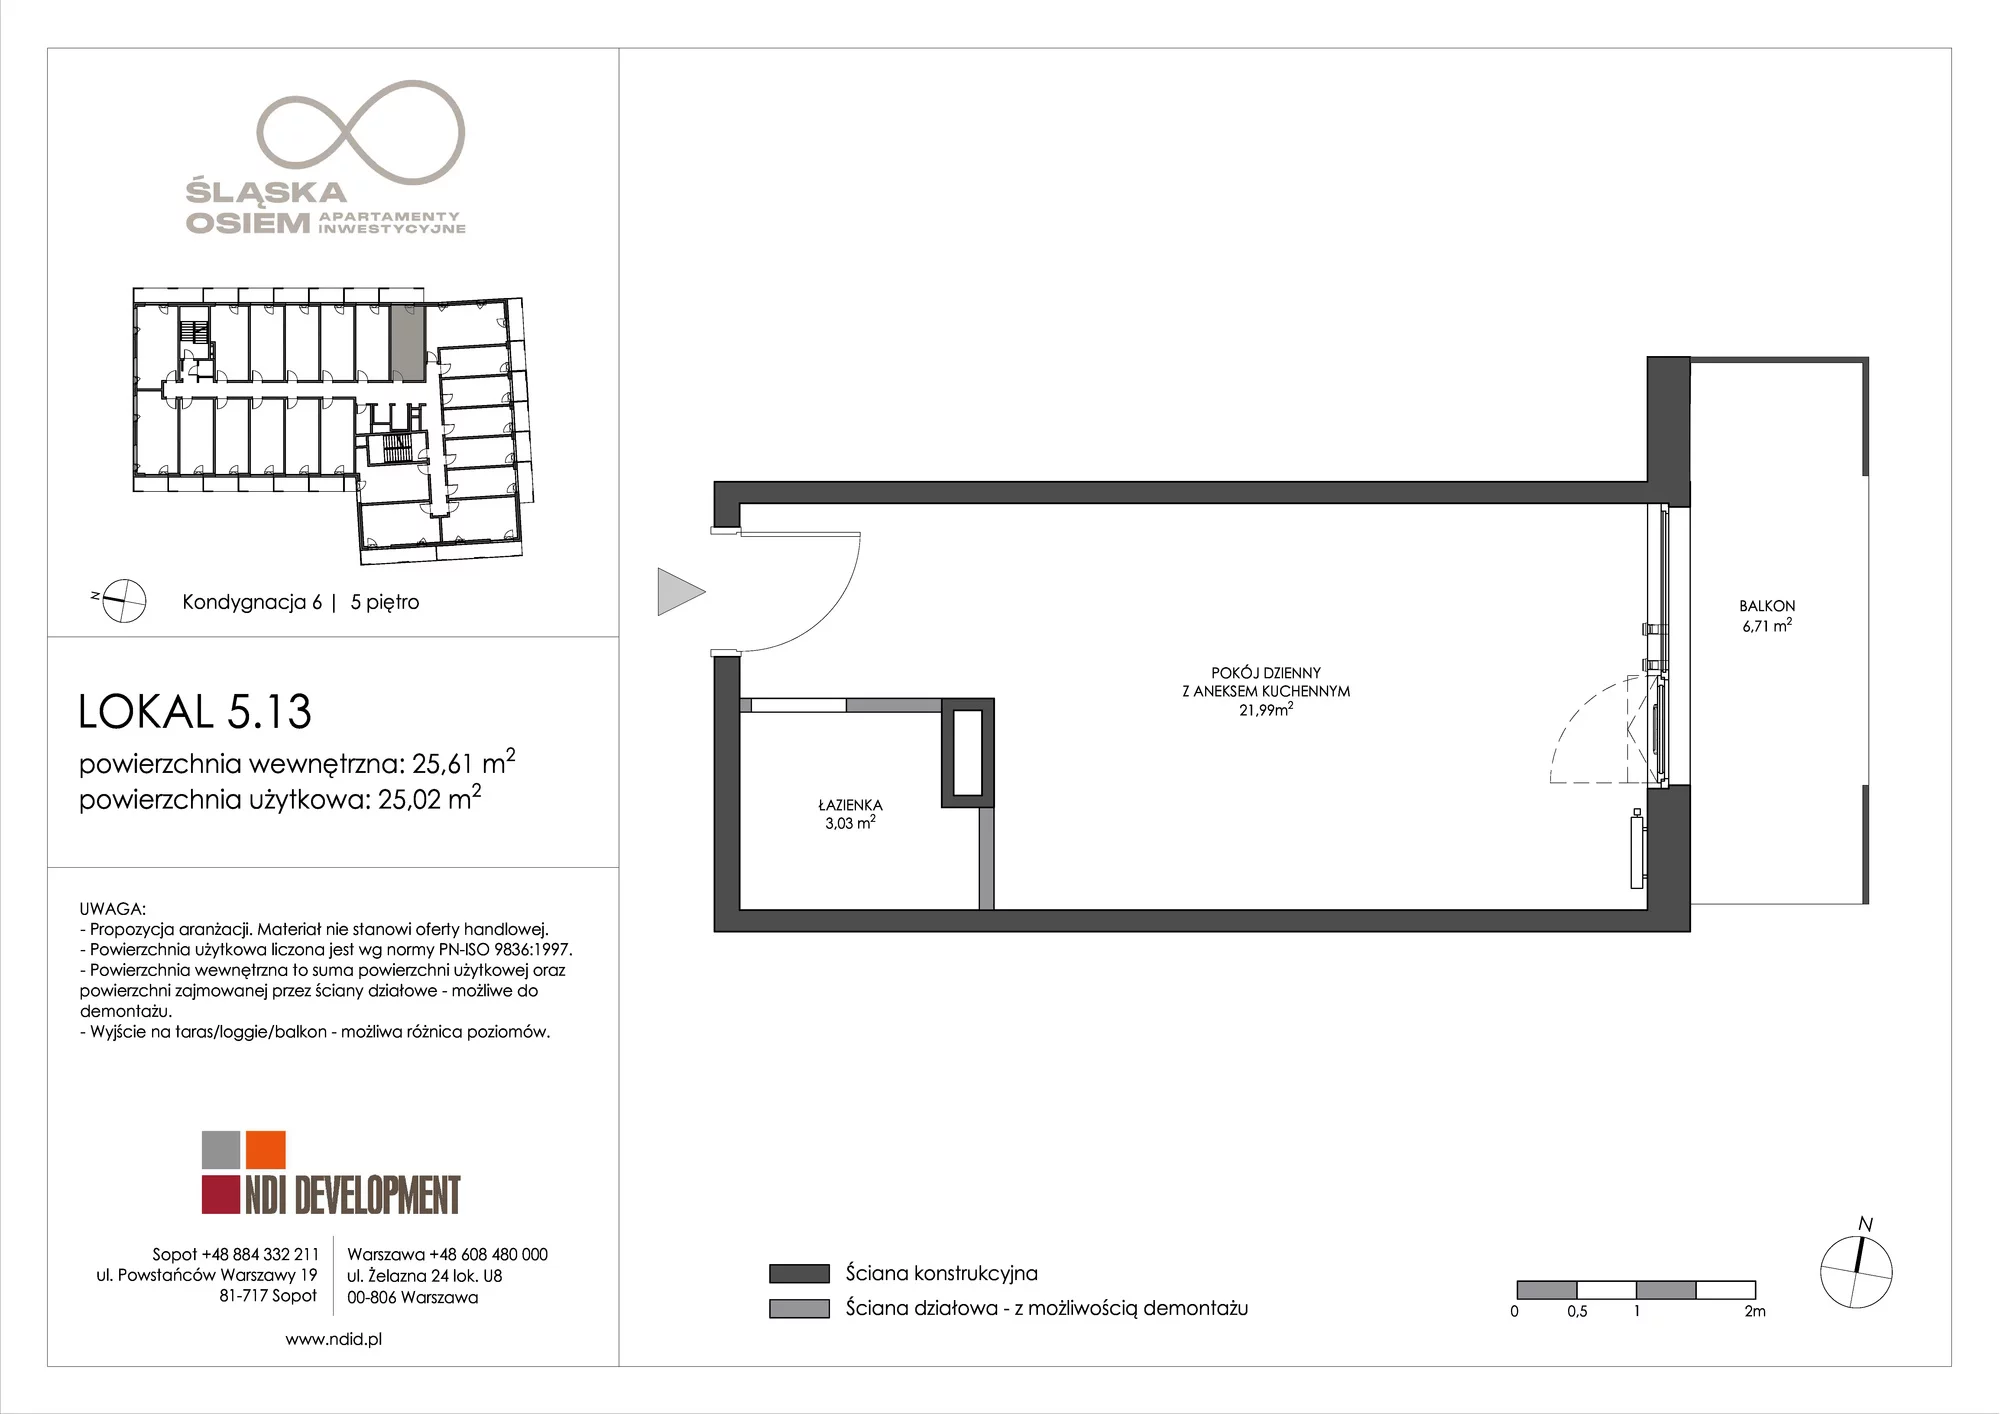 Apartament inwestycyjny 25,61 m², piętro 5, oferta nr 5.13, Śląska Osiem, Gdańsk, Przymorze, ul. Śląska 8